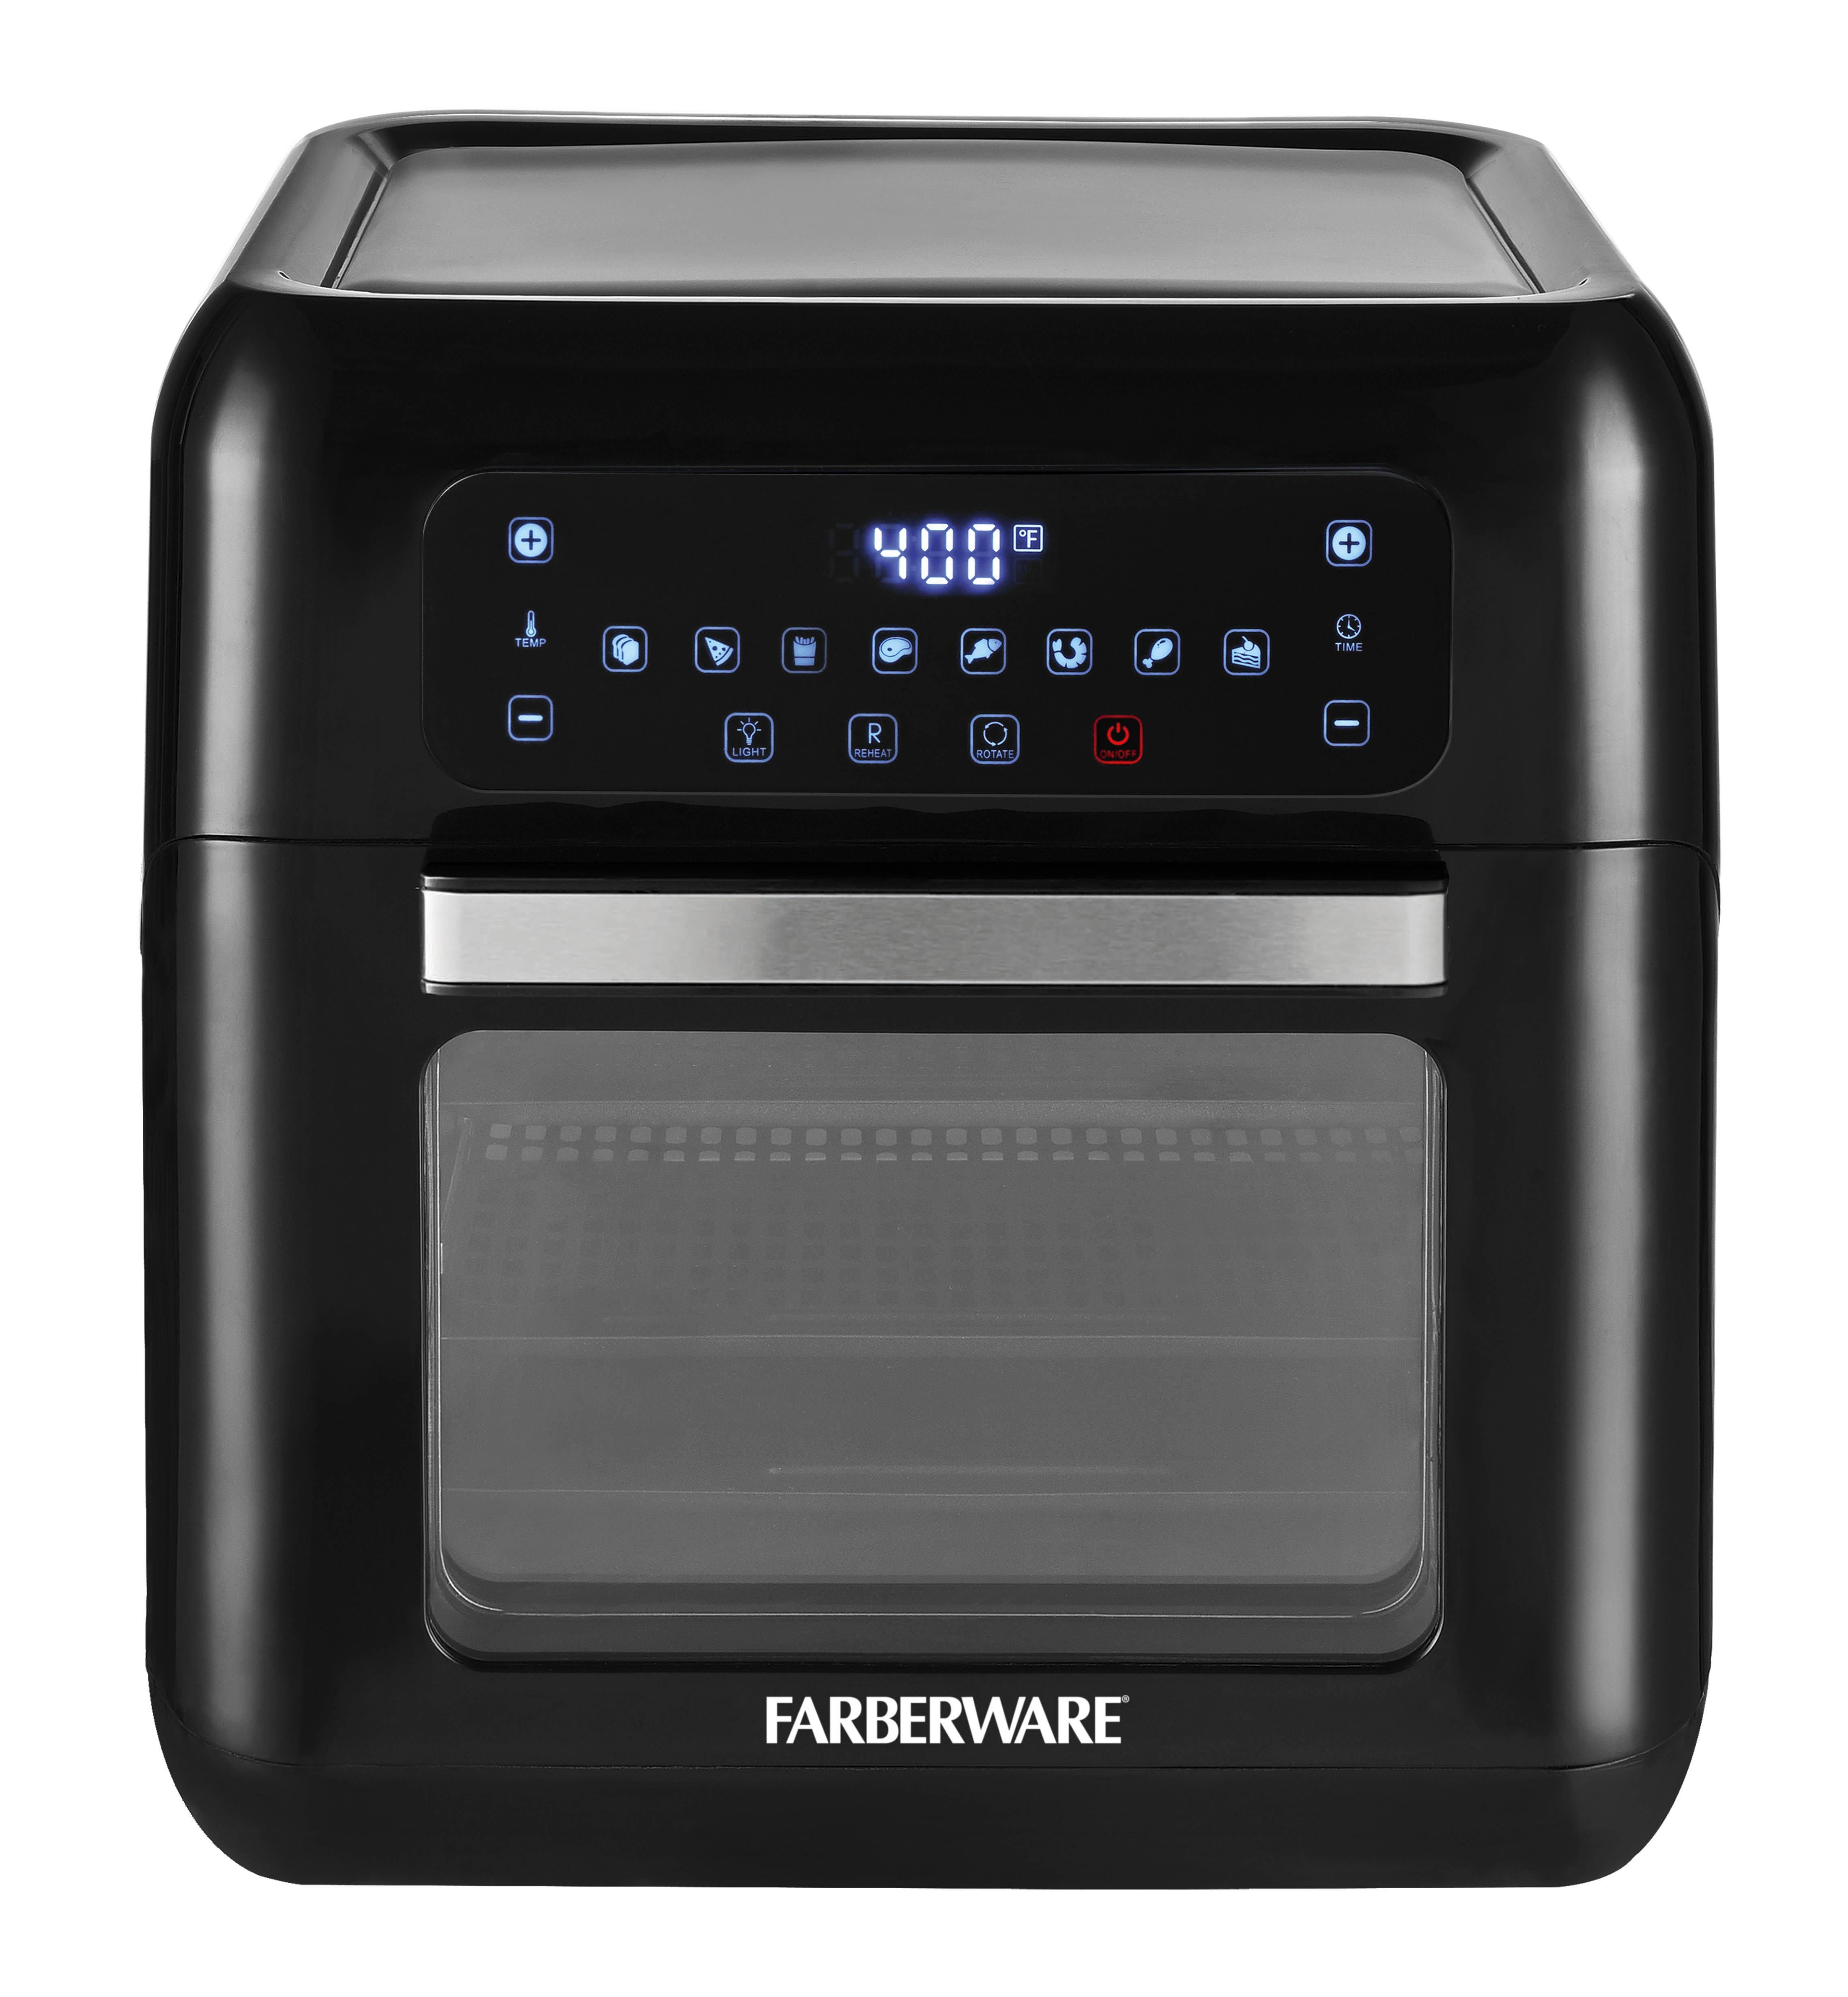 Farberware 6-Quart Digital XL Air Fryer Oven, Black - image 1 of 5